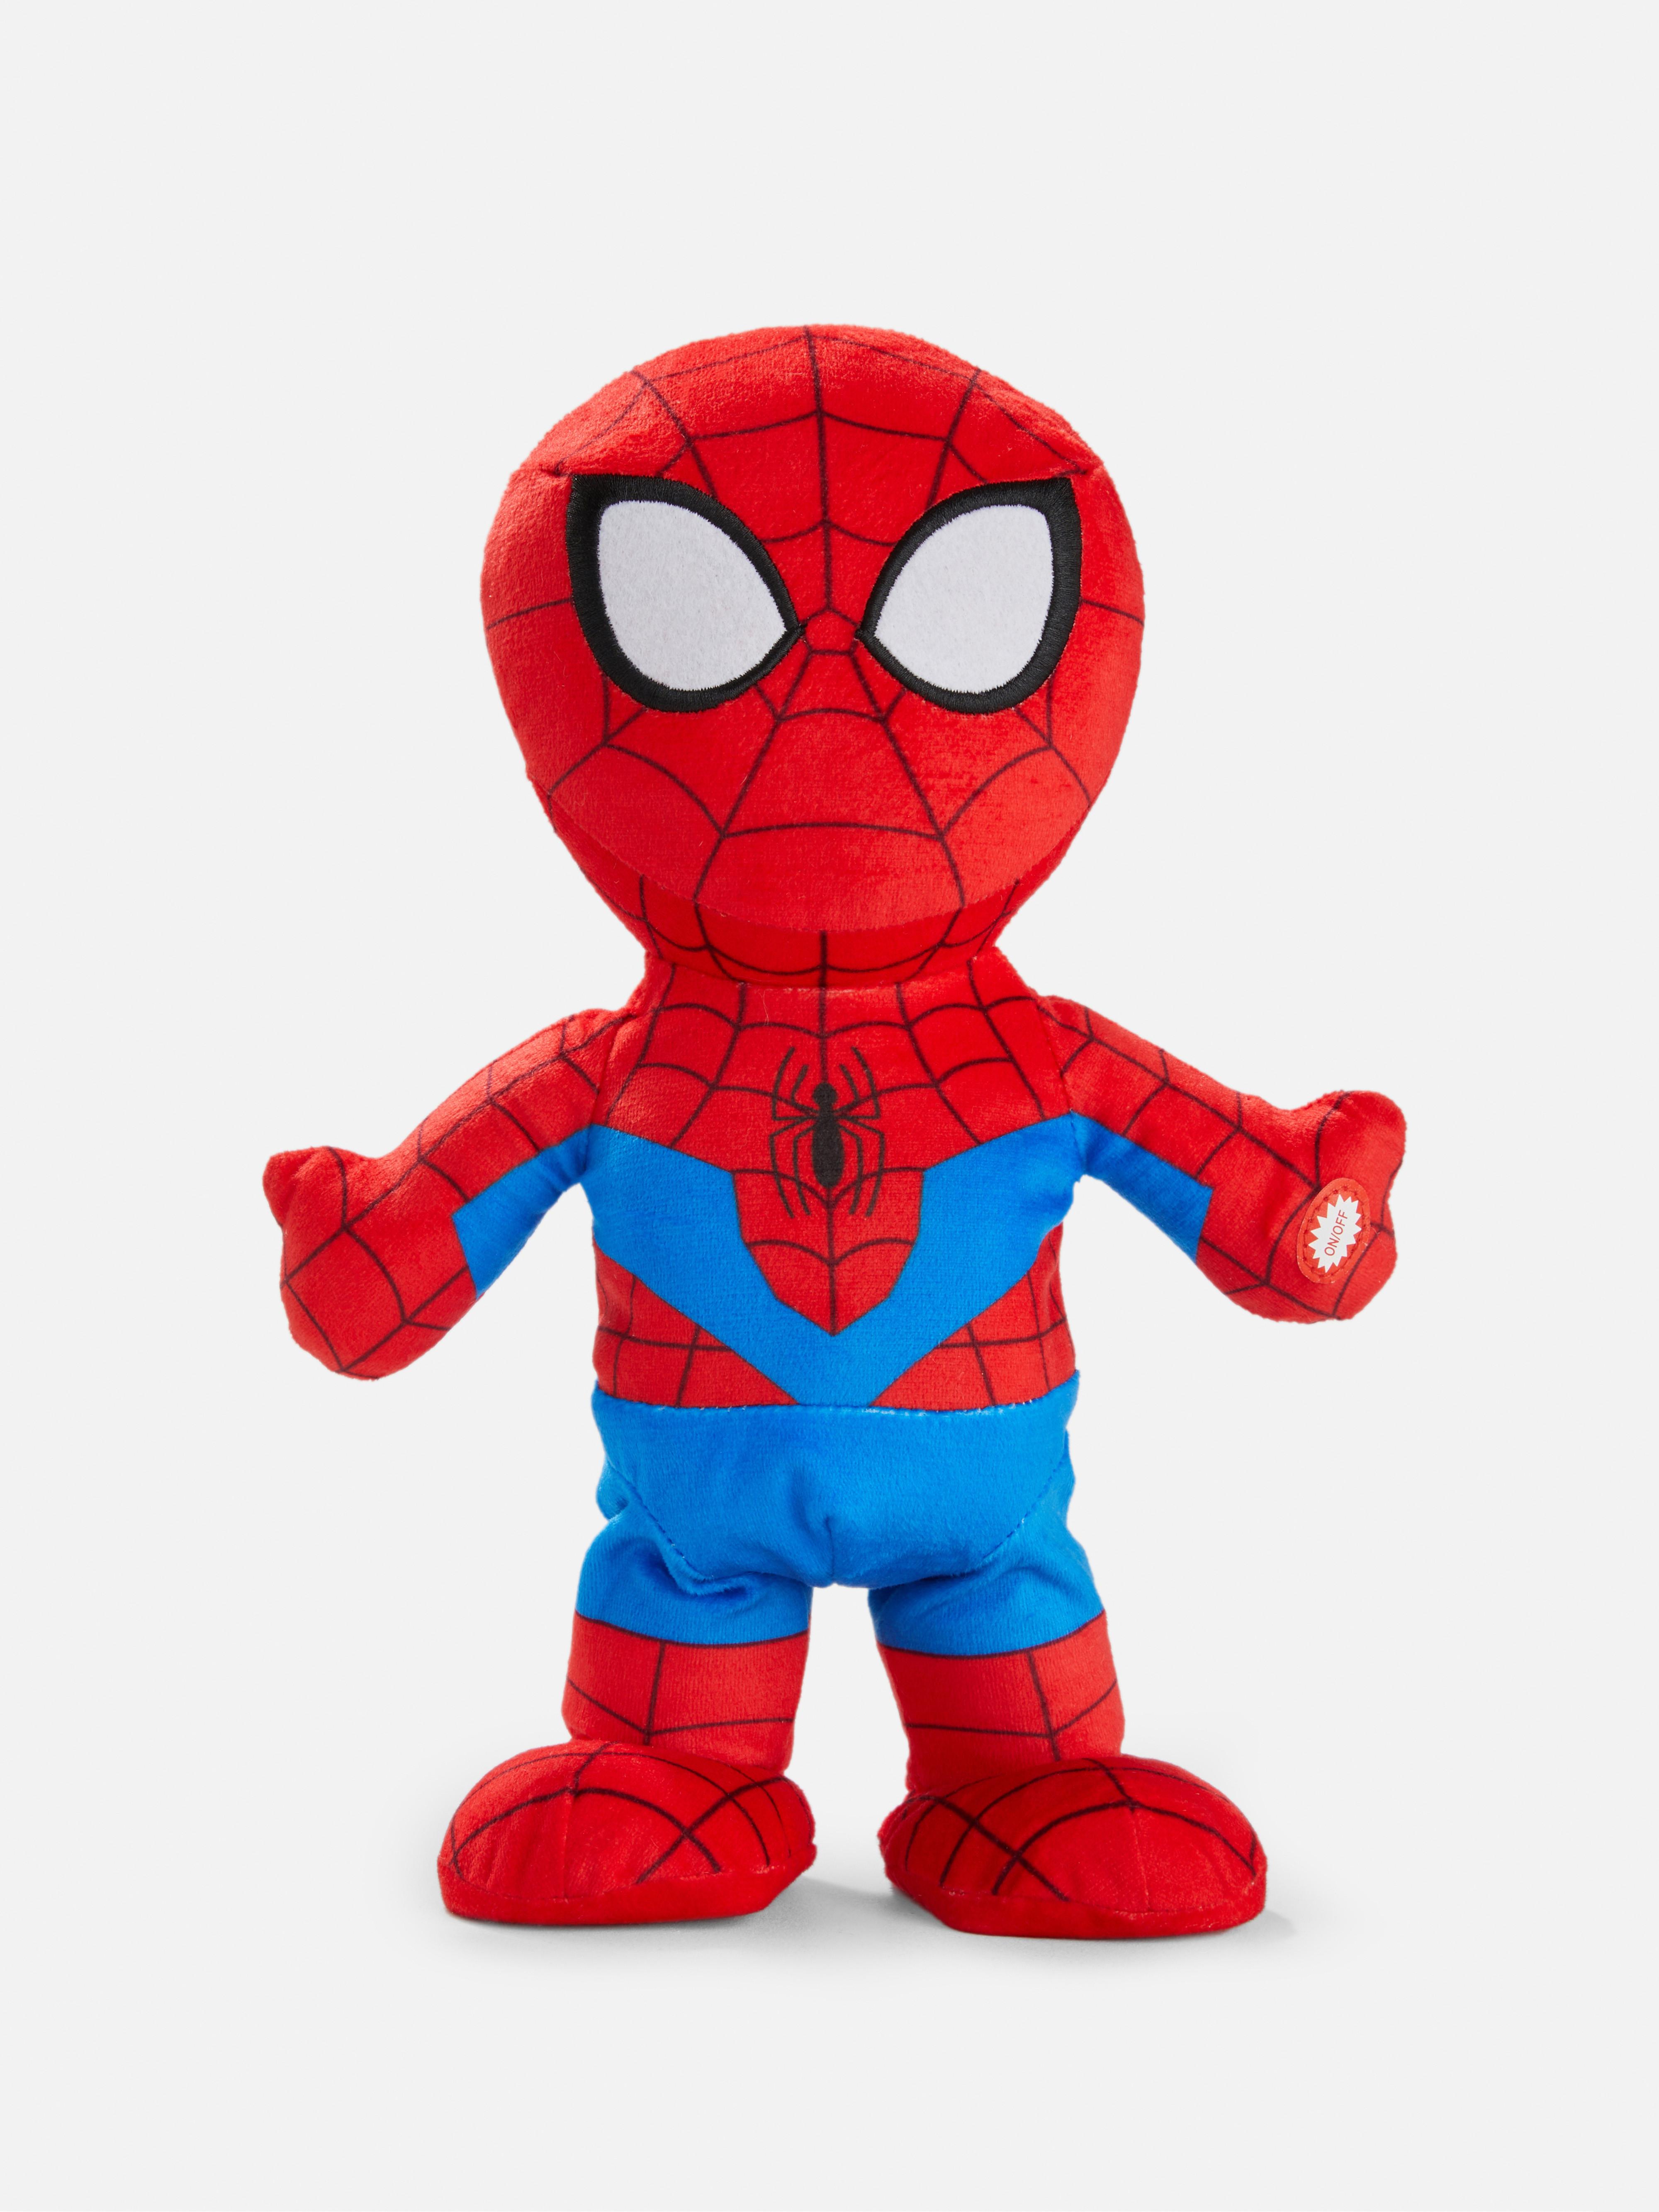 Marvel Spider-Man Walking Talking Plush Toy